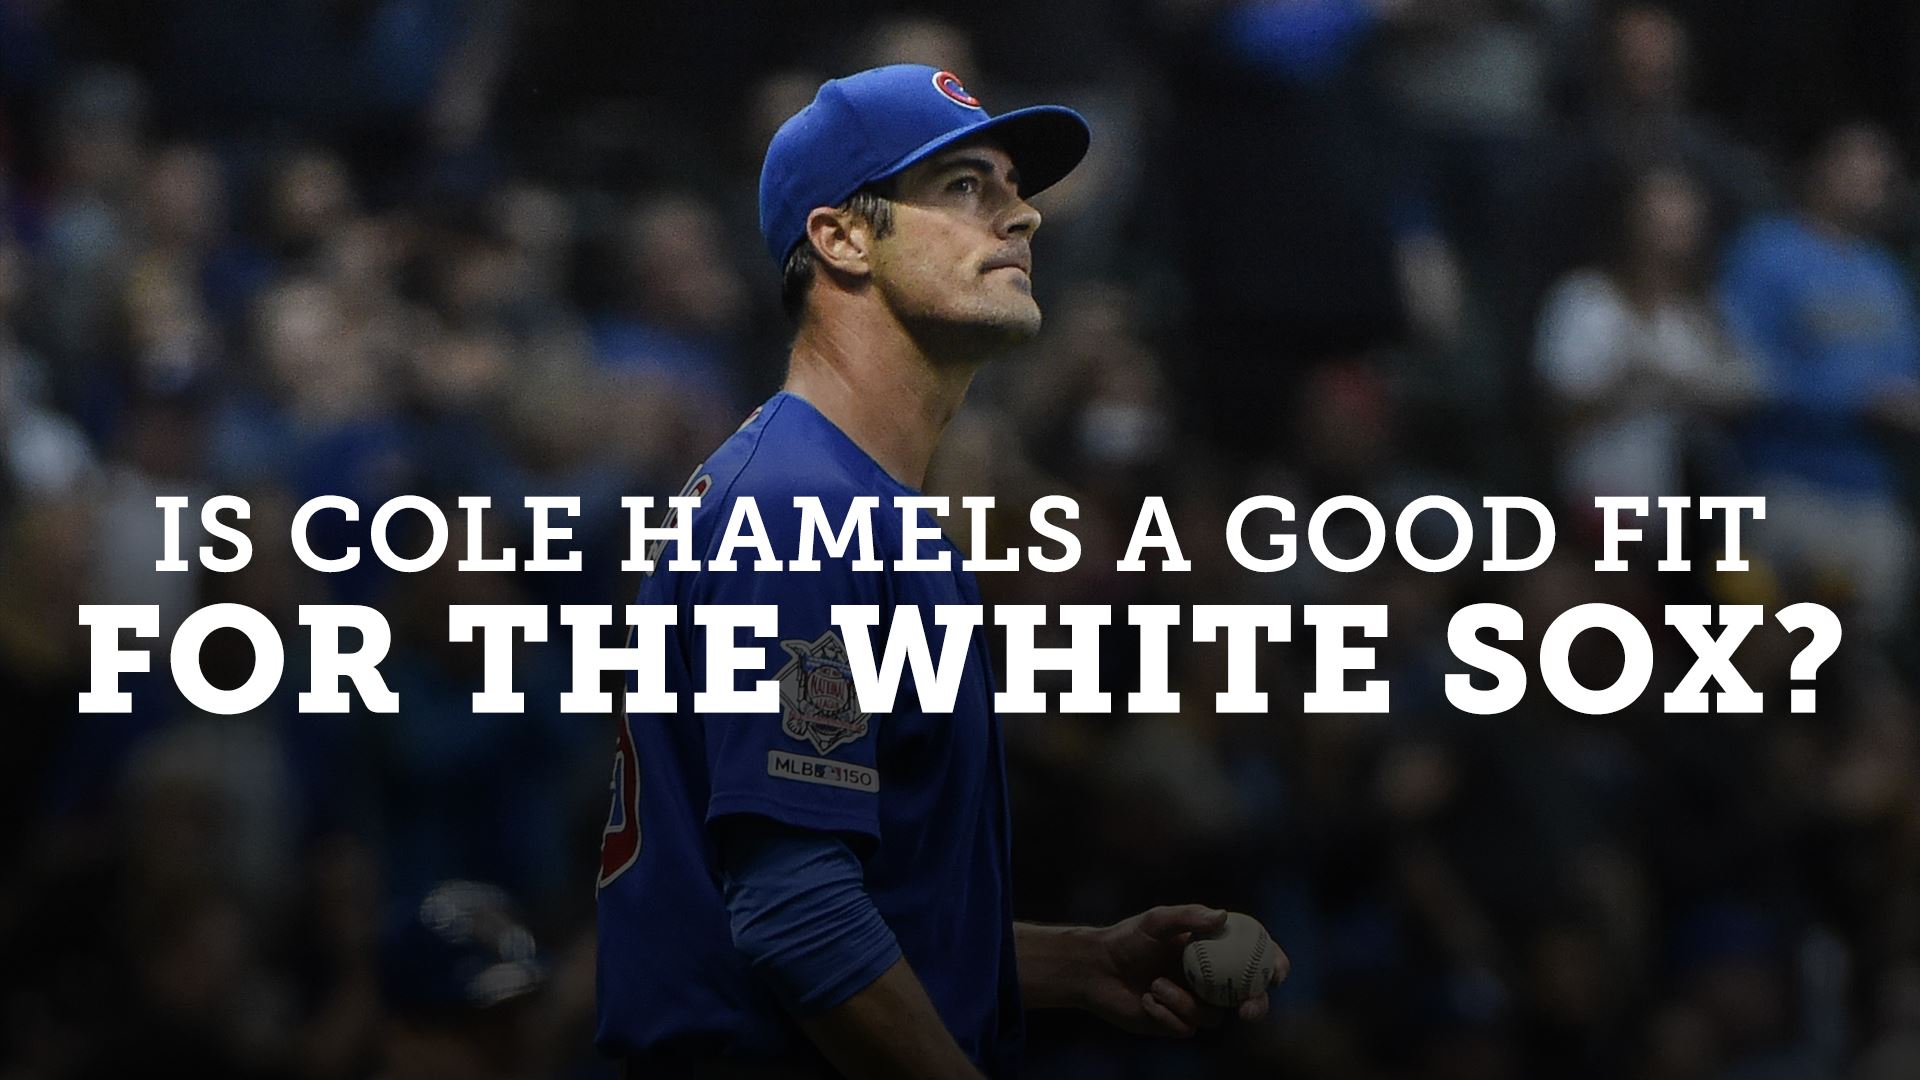 Cole Hamels World Series MLB Jerseys for sale